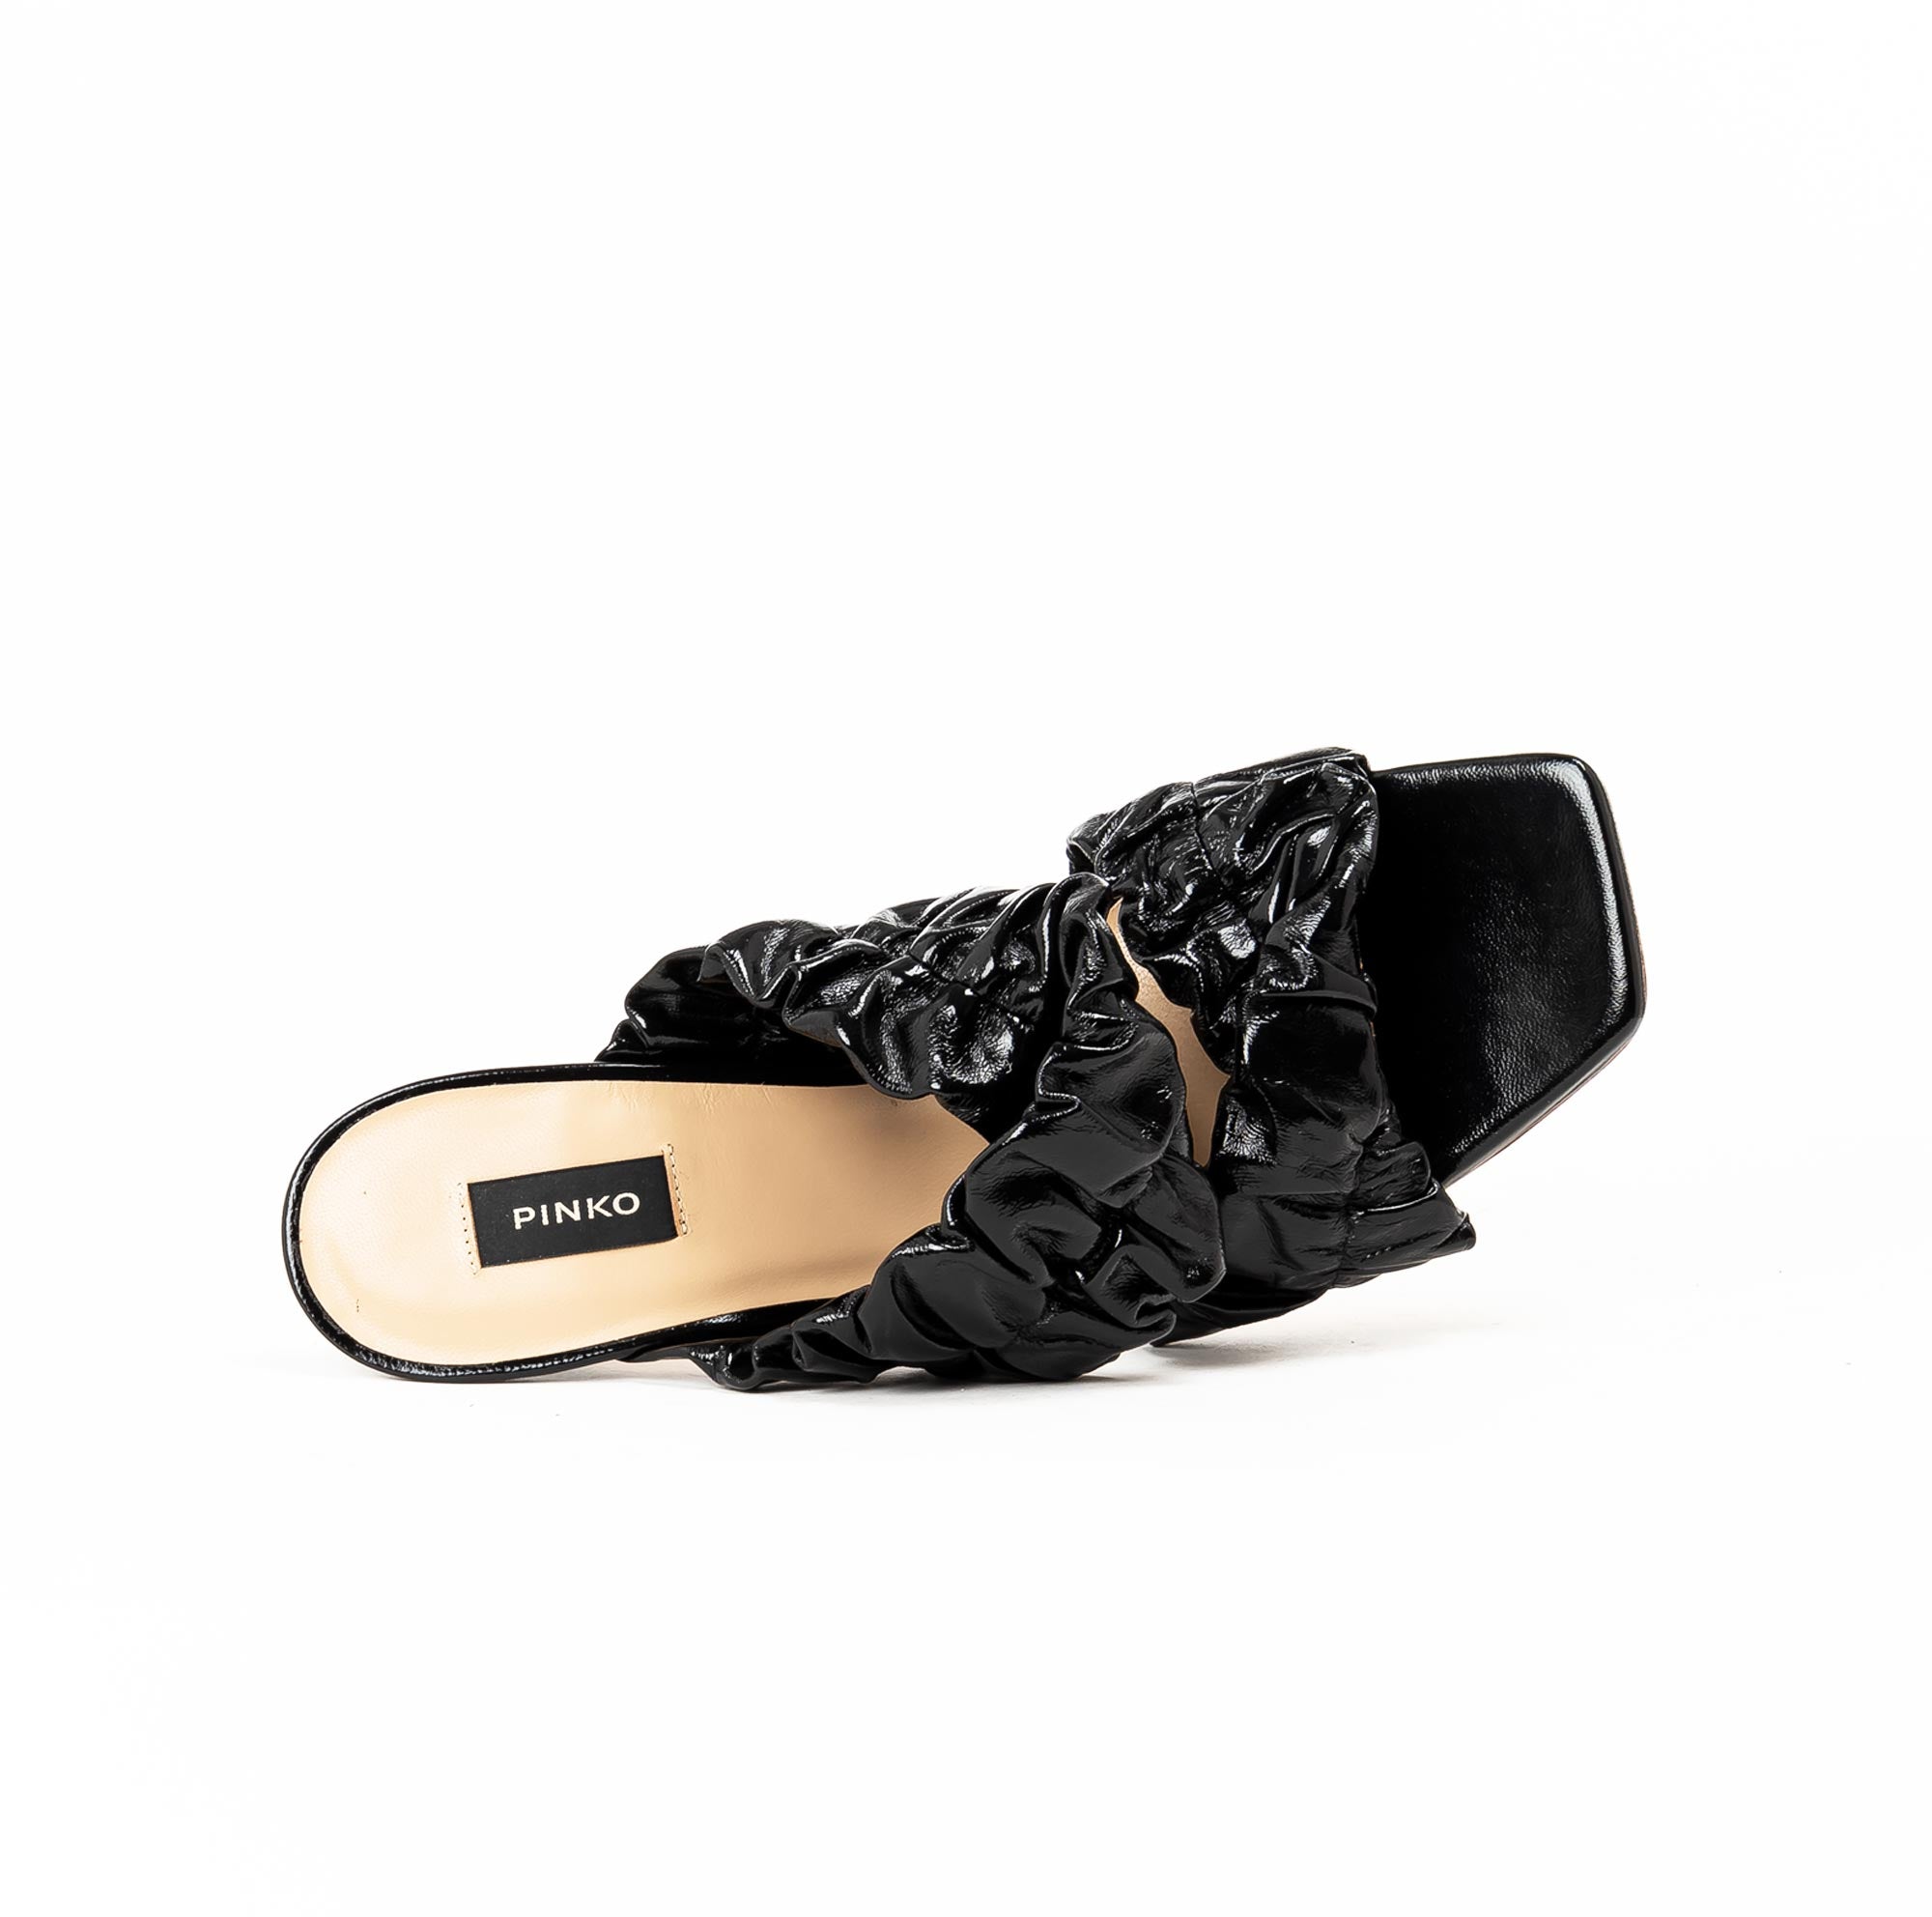 pinko | sandali eleganti da donna